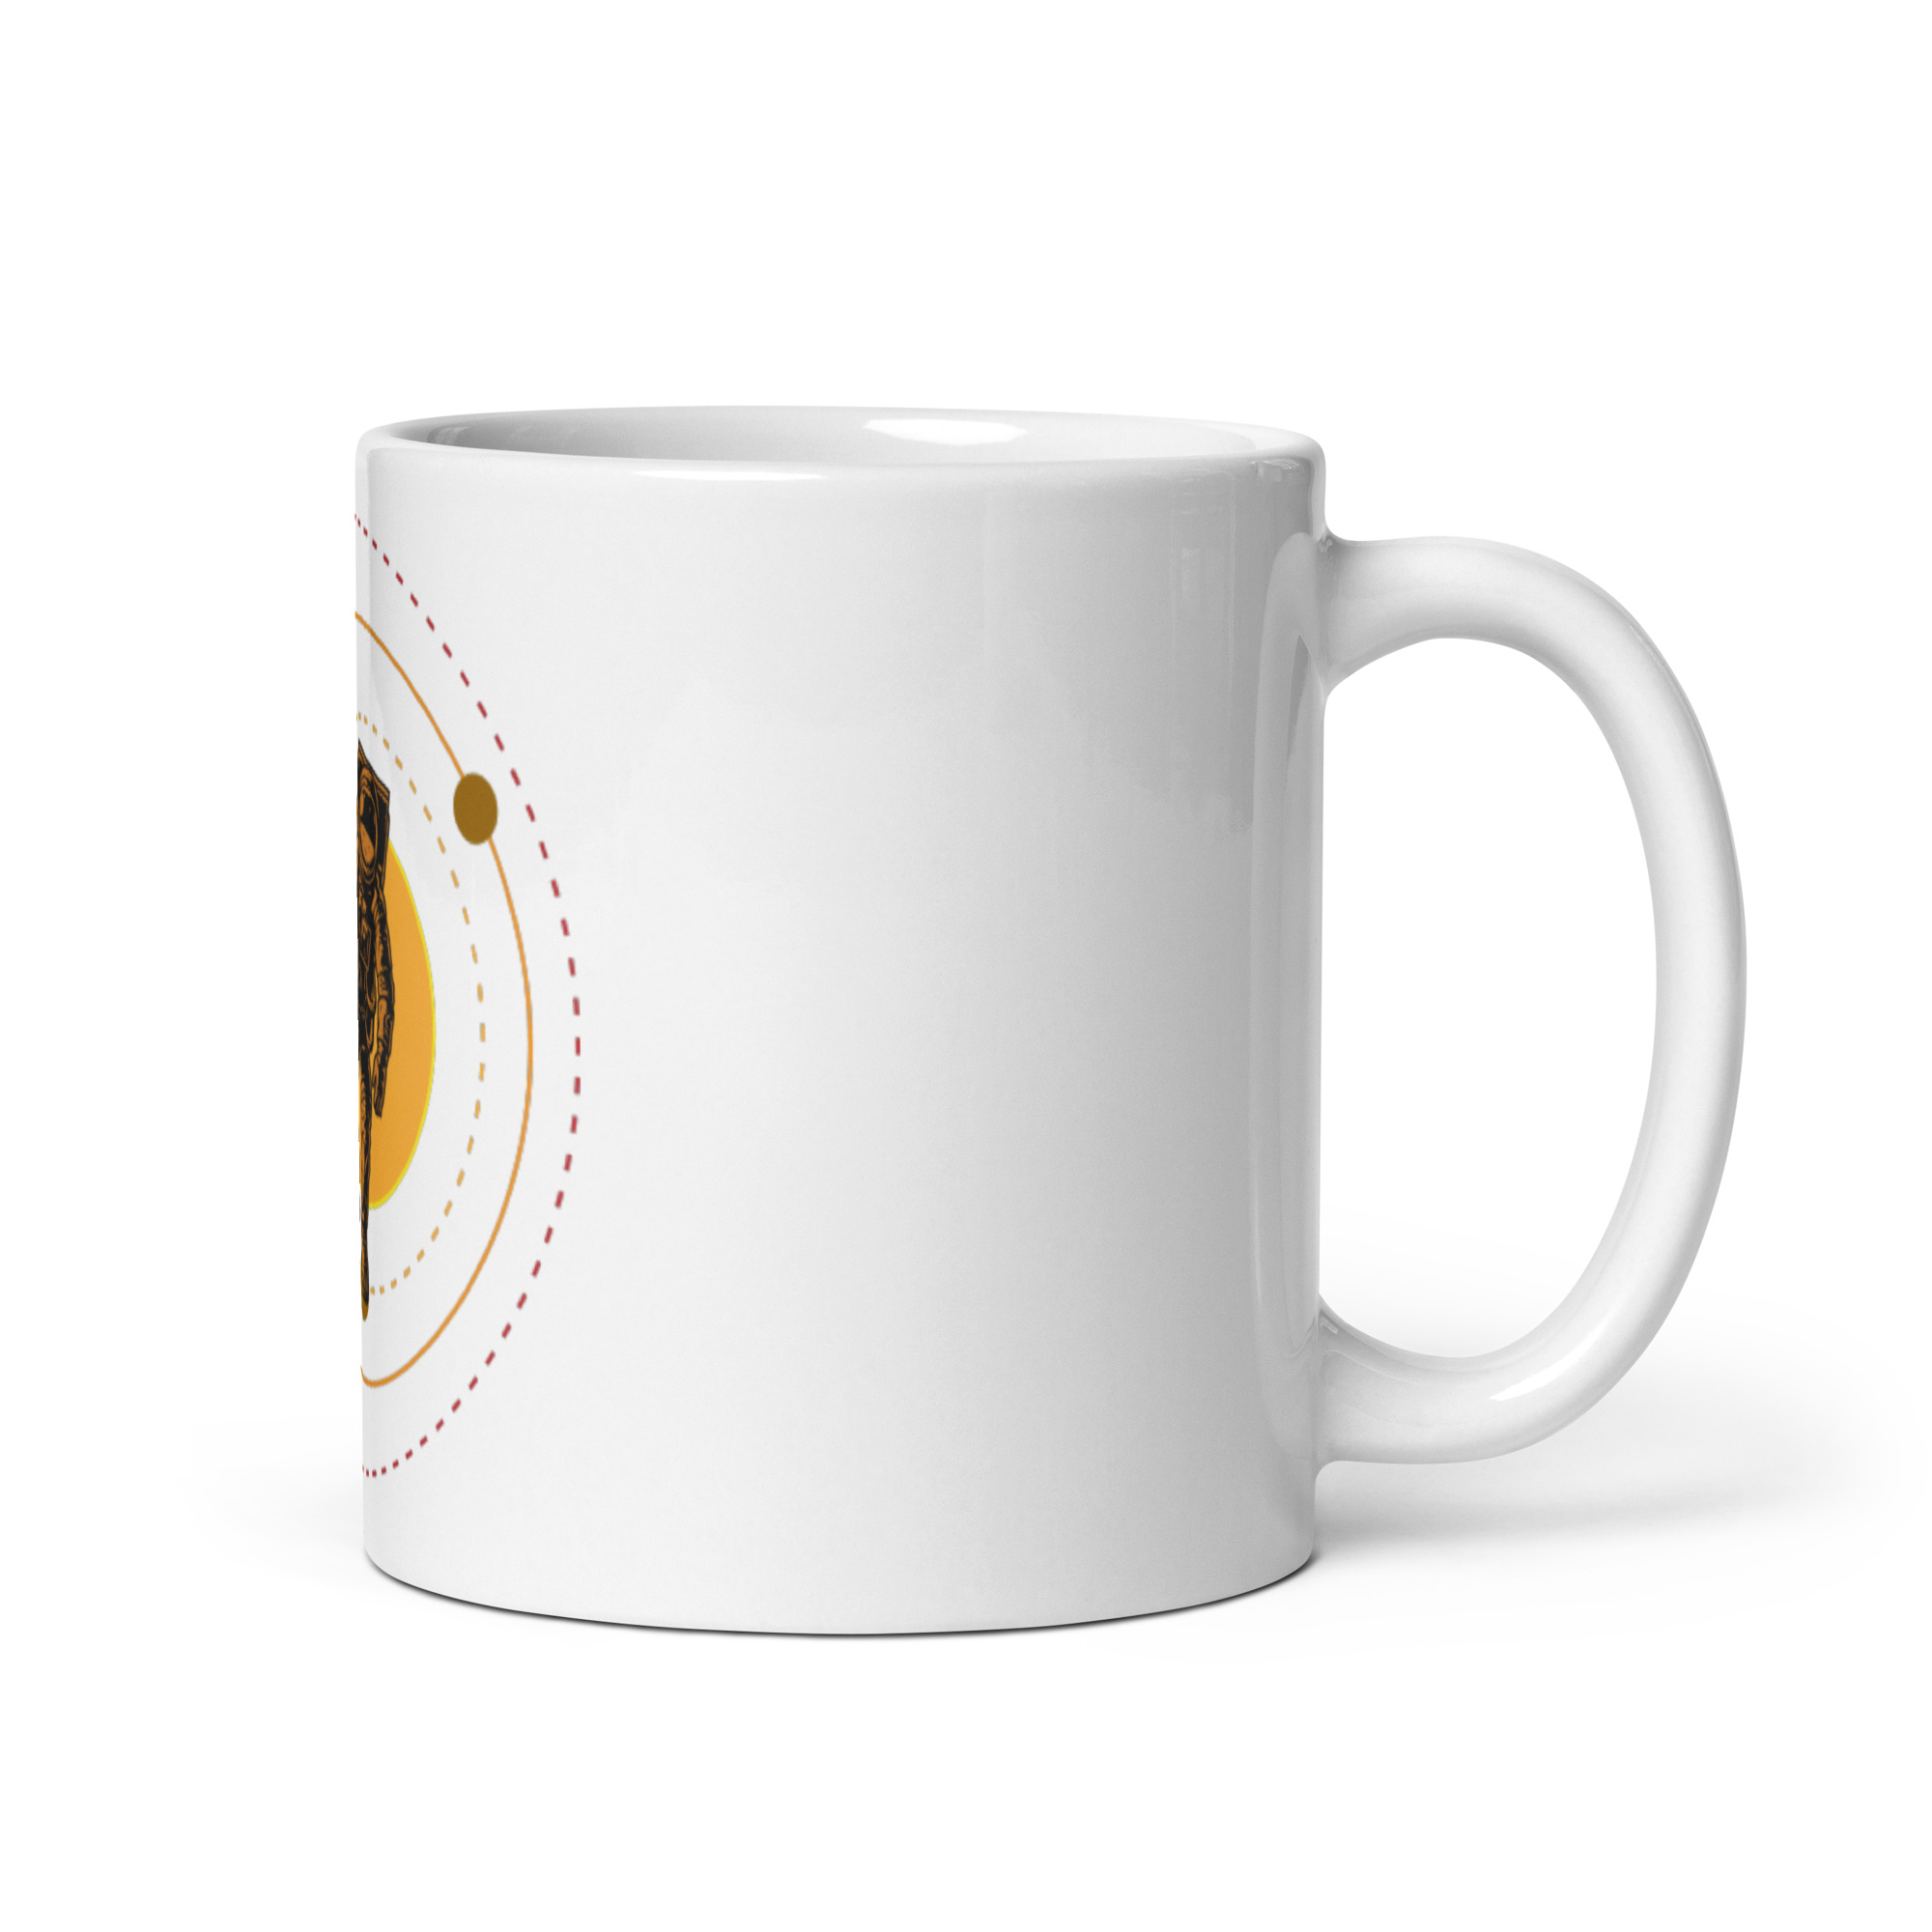 white-glossy-mug-white-11oz-handle-on-right-647490df0dab5.jpg